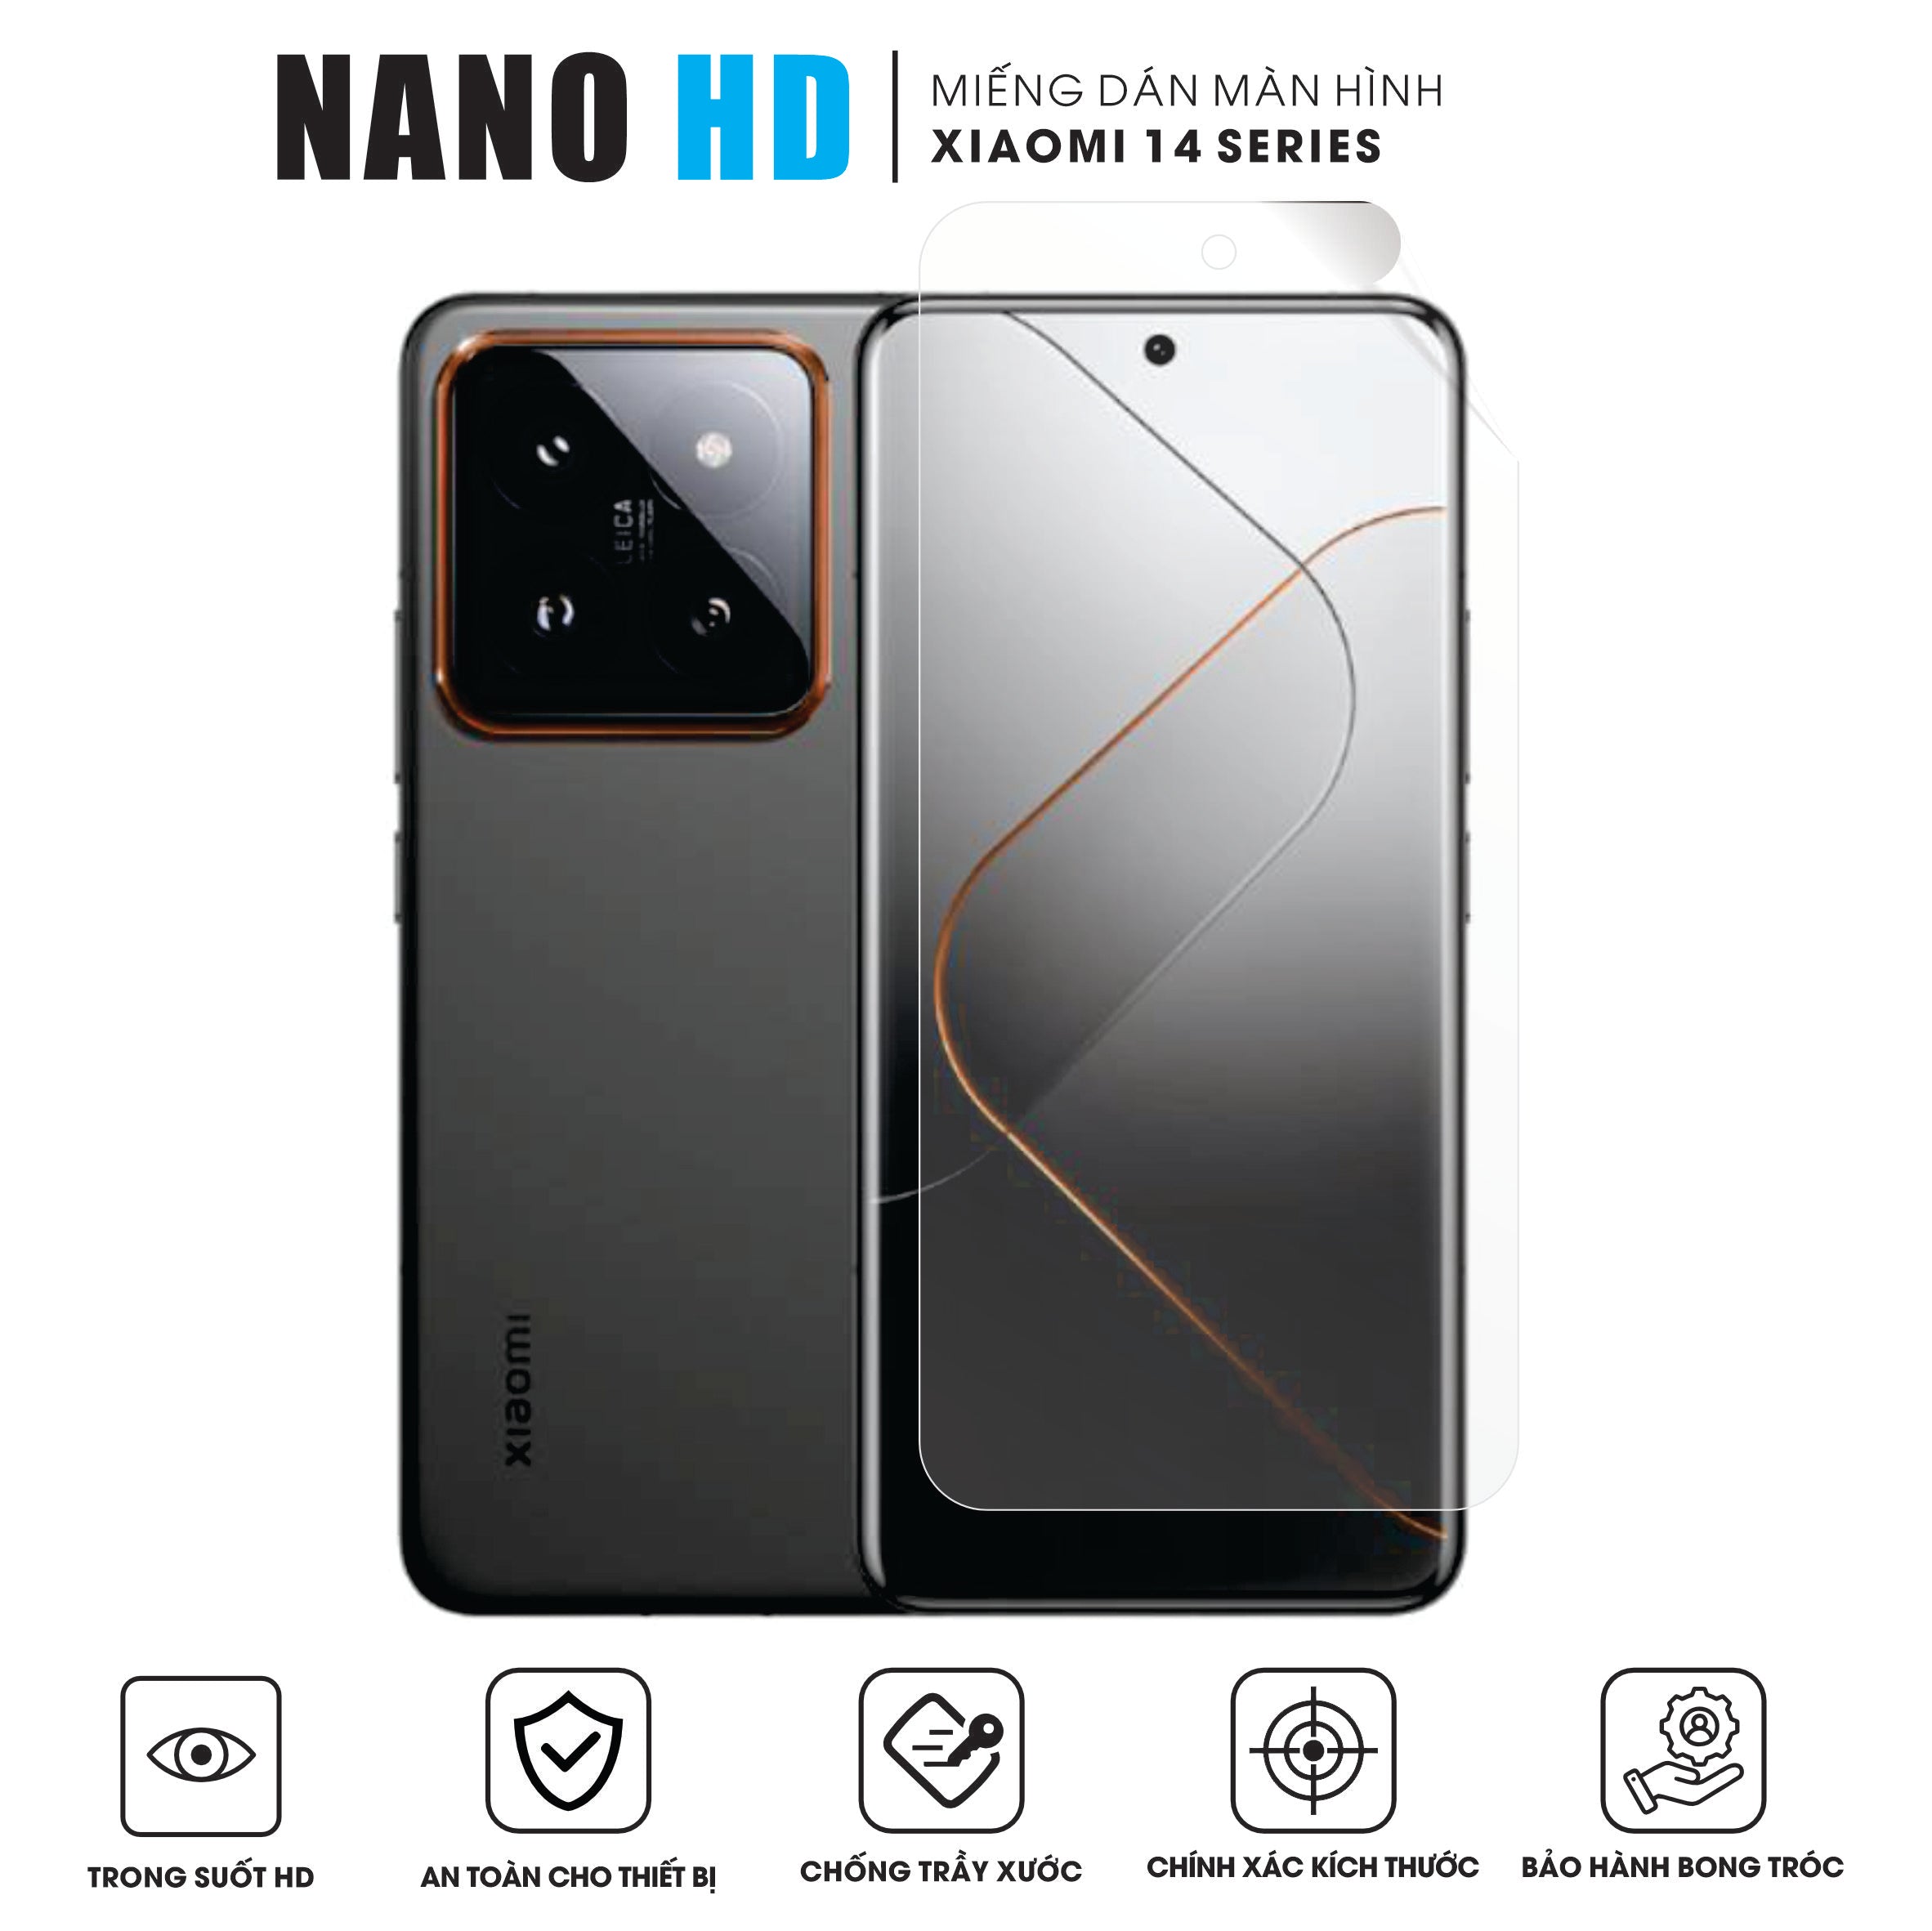 Miếng dán màn hình Nano HD trong suốt